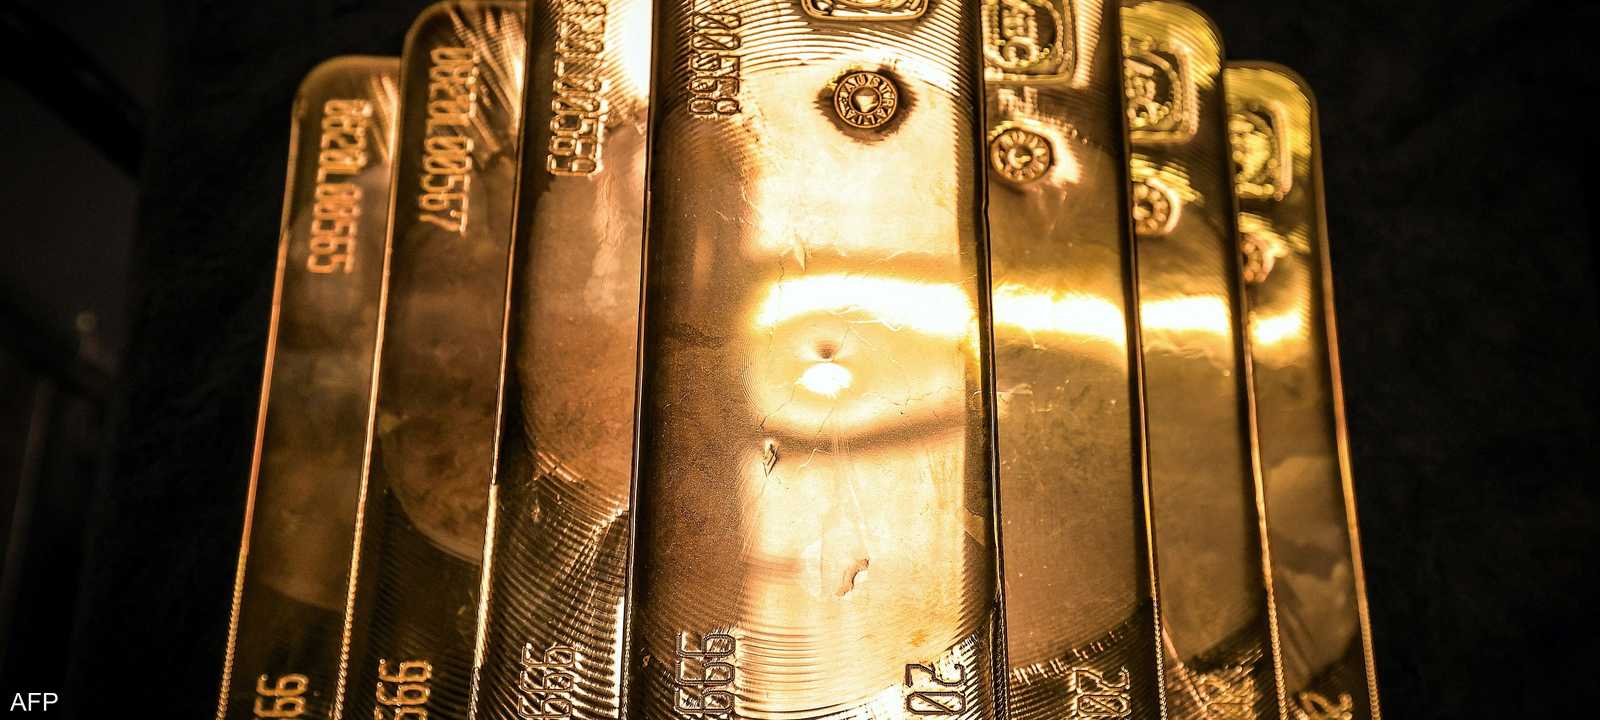 أول تراجع لأسعار الذهب في مصر